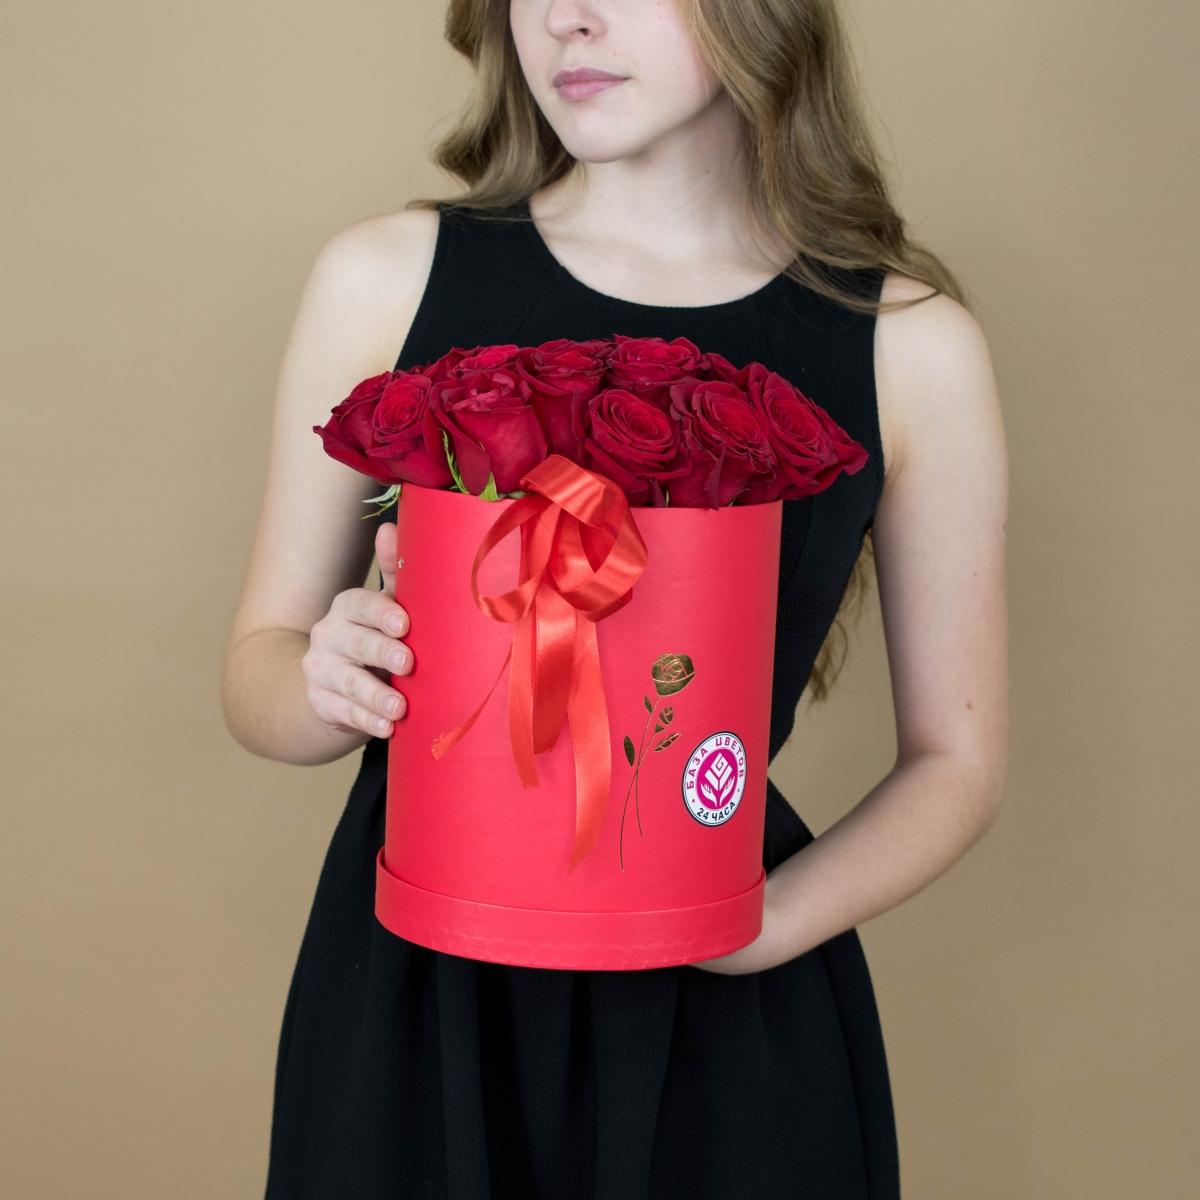 Розы красные в шляпной коробке артикул букета  2002